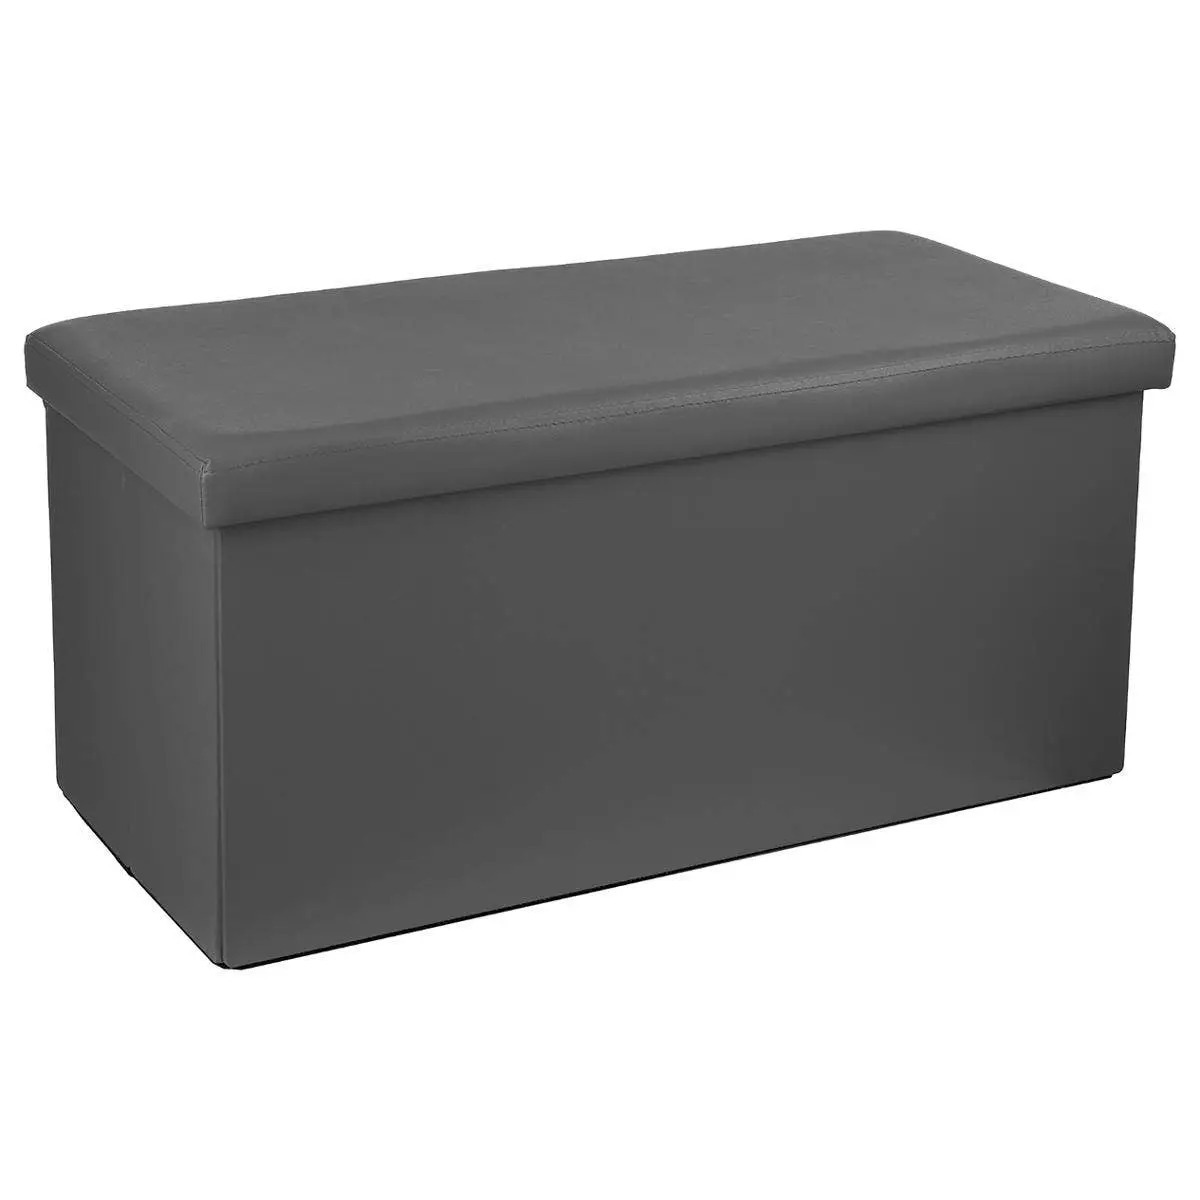 Poef-hocker opbergbox grijs kunststof-mdf 76 x 38 x 38 cm opvouwbaar